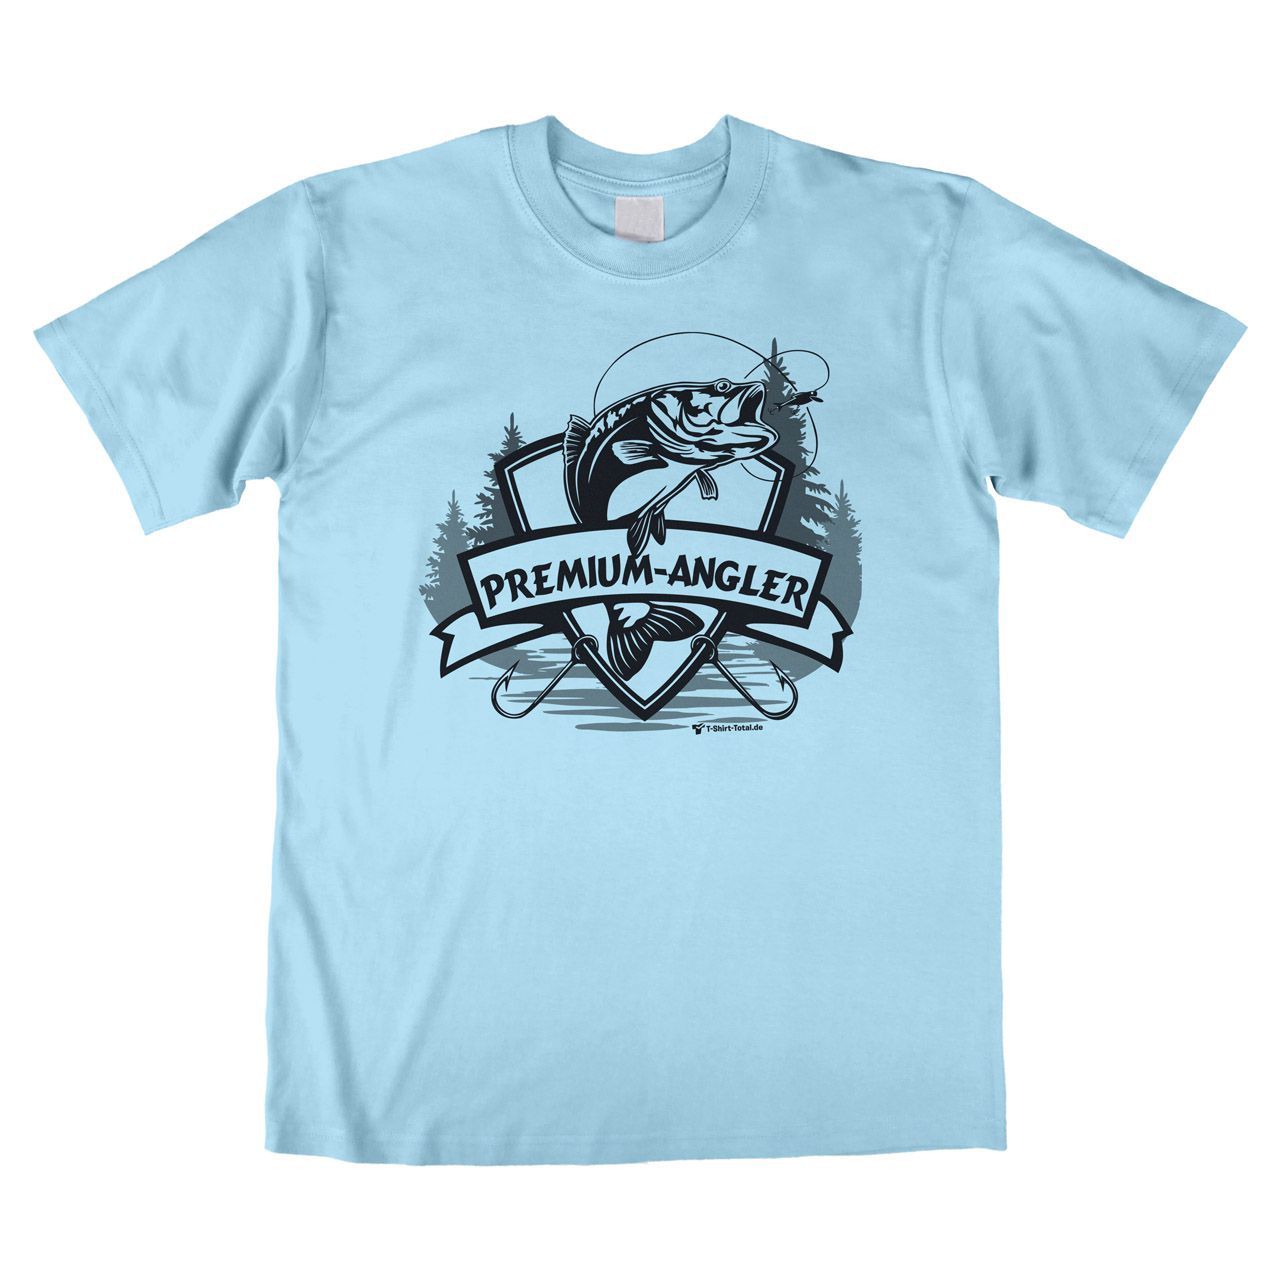 Premium-Angler Unisex T-Shirt hellblau Extra Large